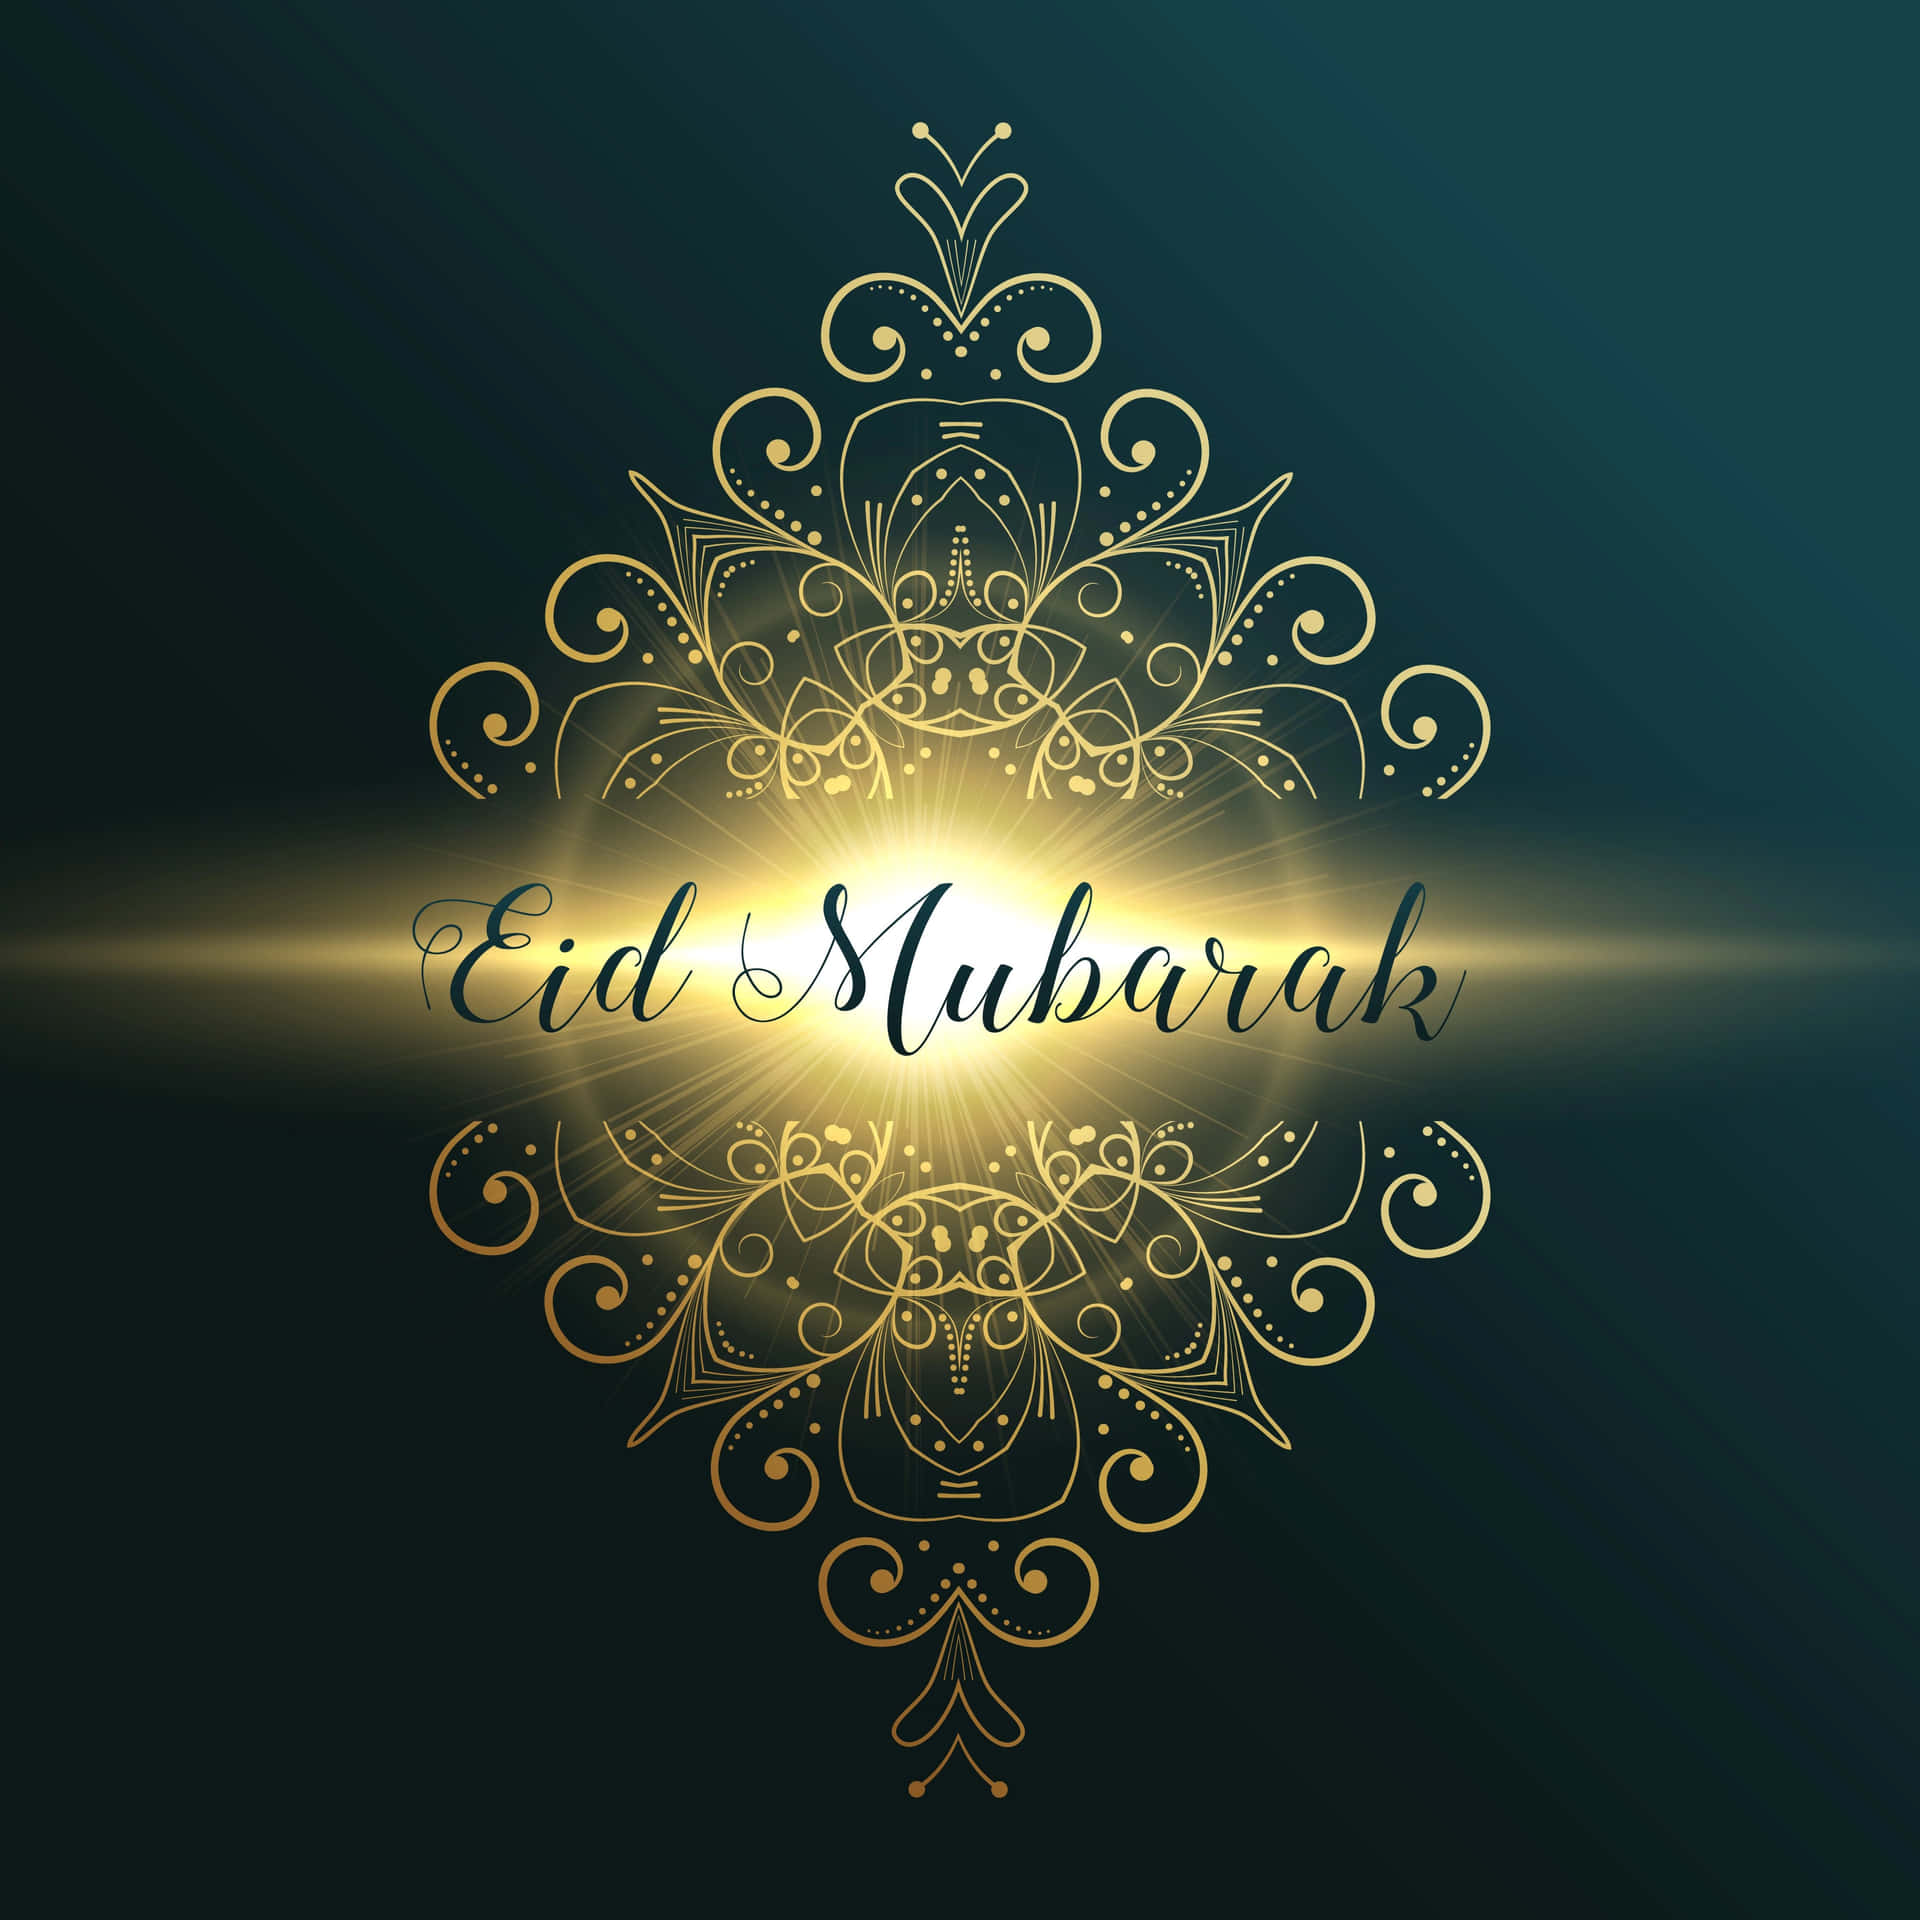 Celebrating Eid - The Joyful Holiday